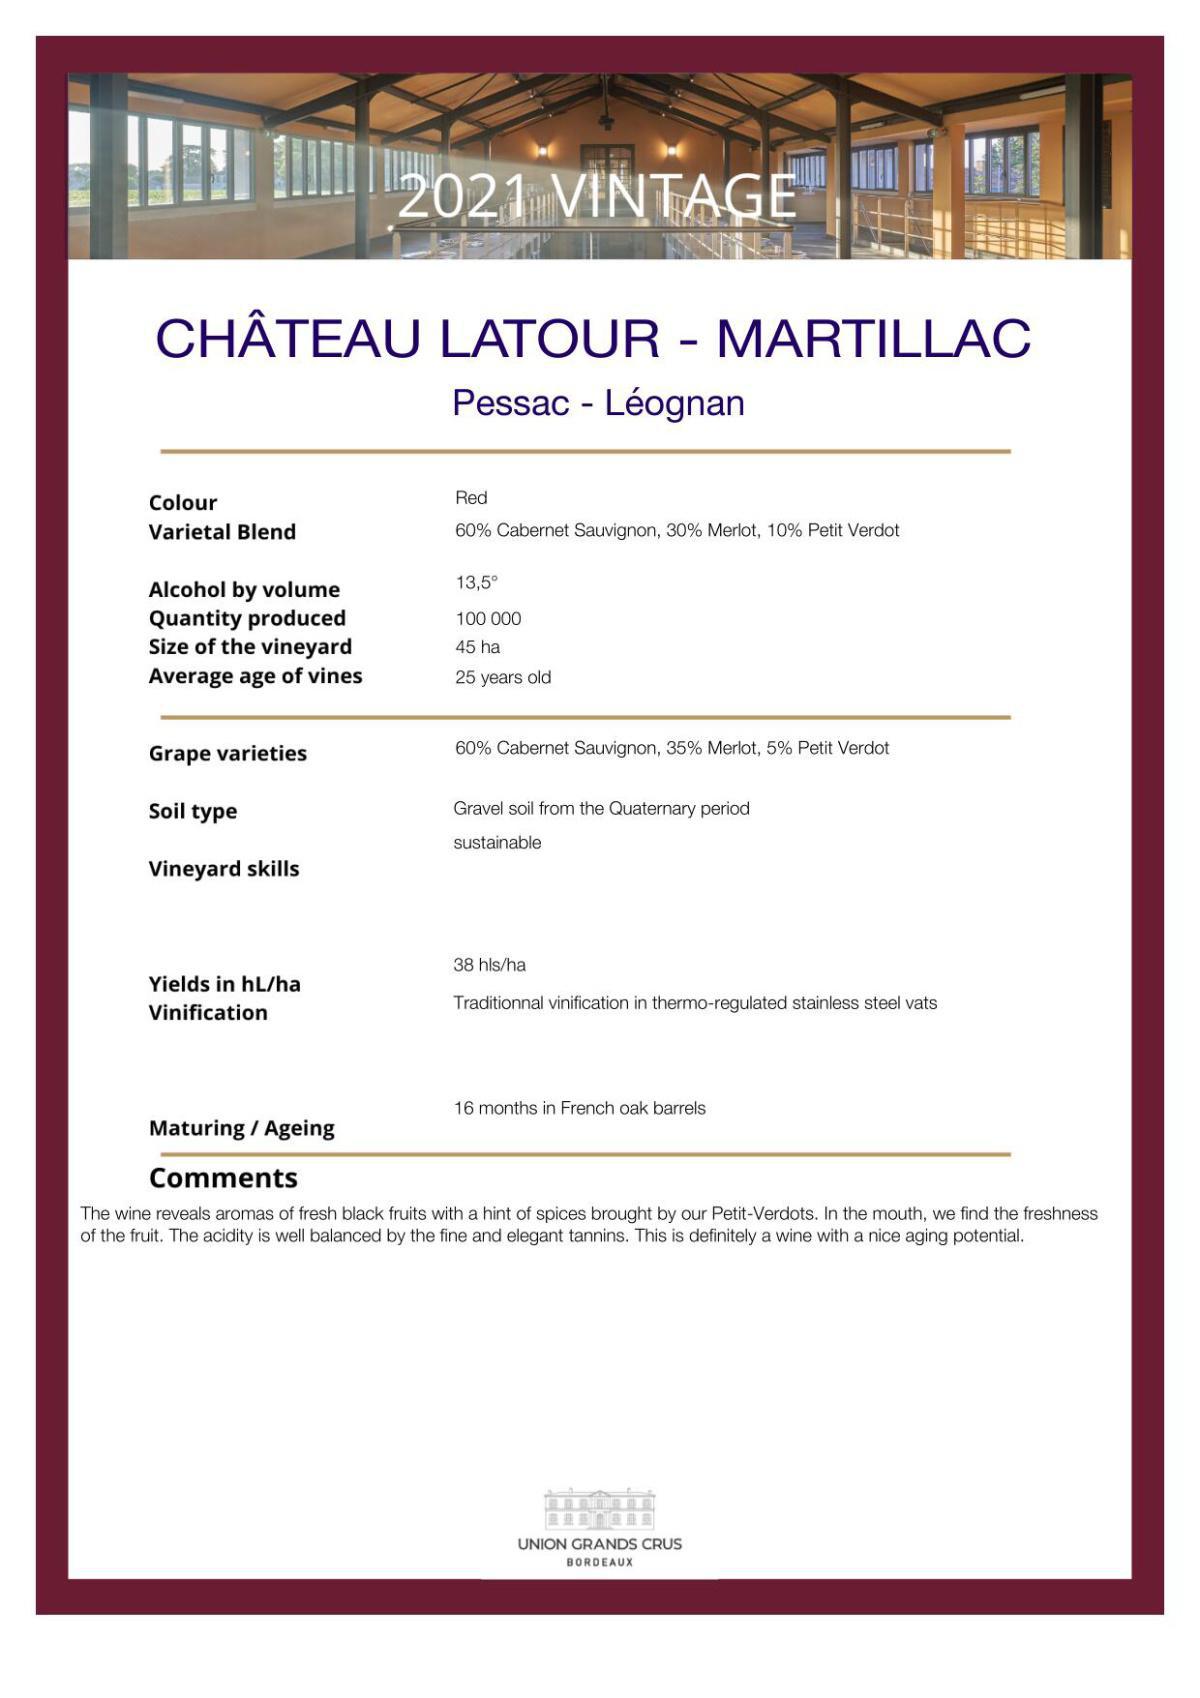 Château Latour - Martillac - Red